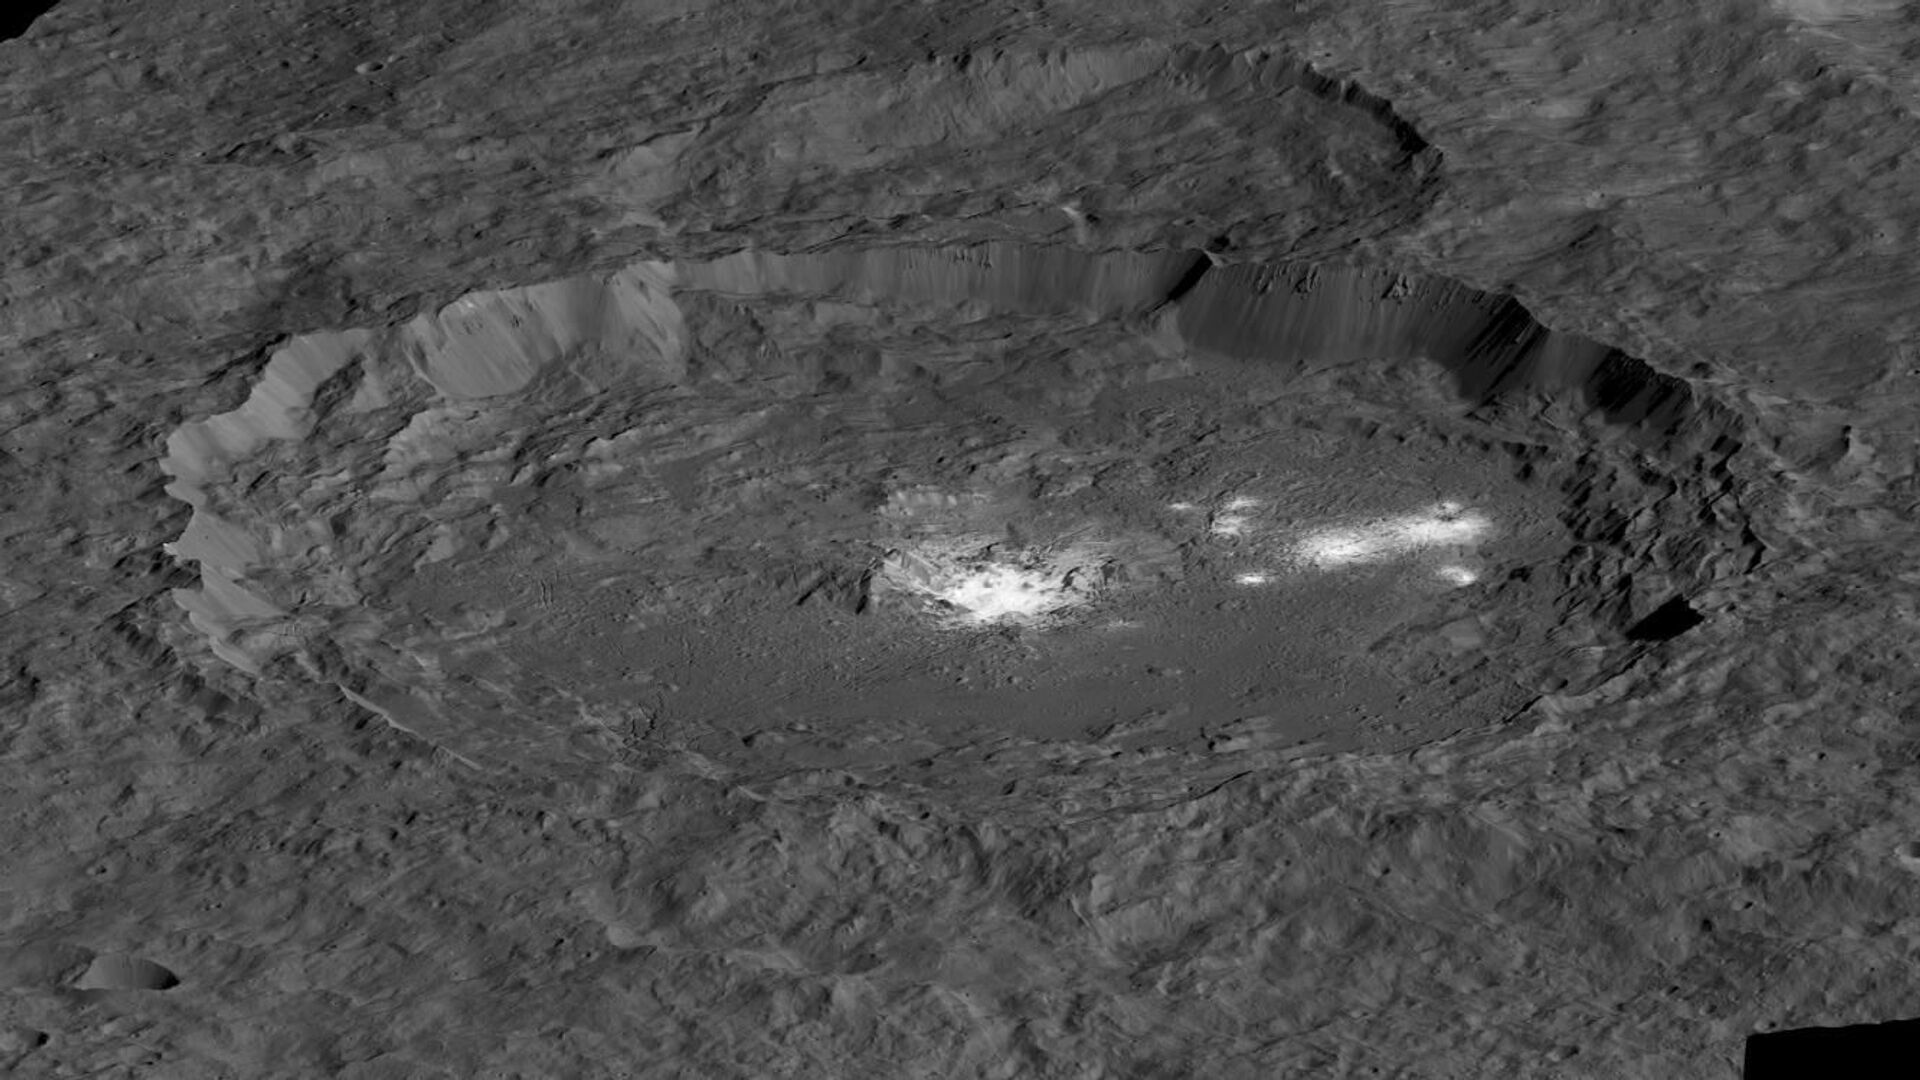 Ao analizar cratera Occator, novo estudo revela existência de gelo no planeta anão Ceres - Sputnik Brasil, 1920, 14.08.2021